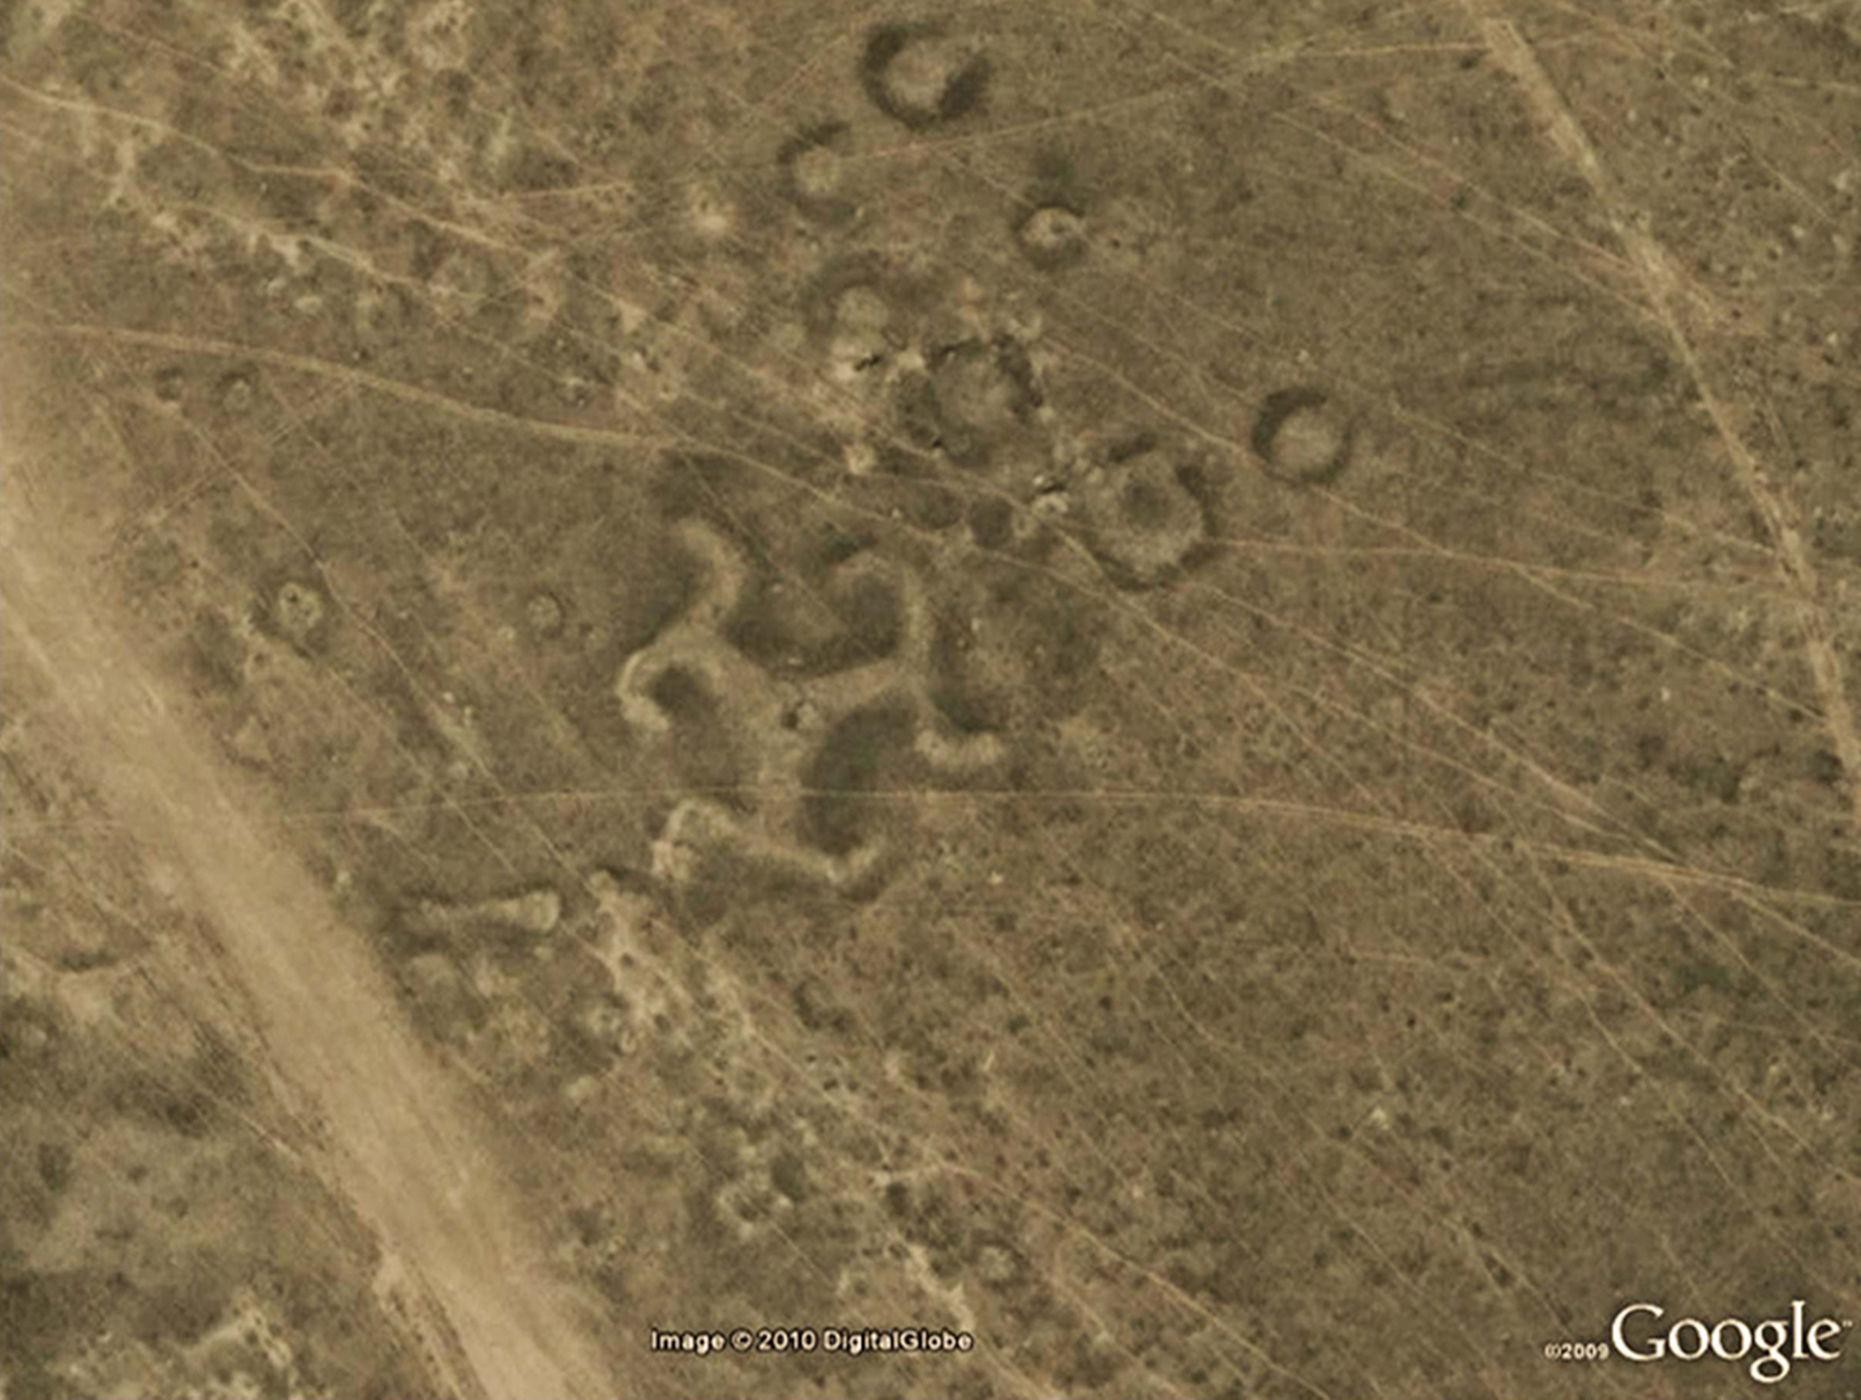 24 ảnh đảm bảo độc lạ từ Google Earth - Ảnh 1.